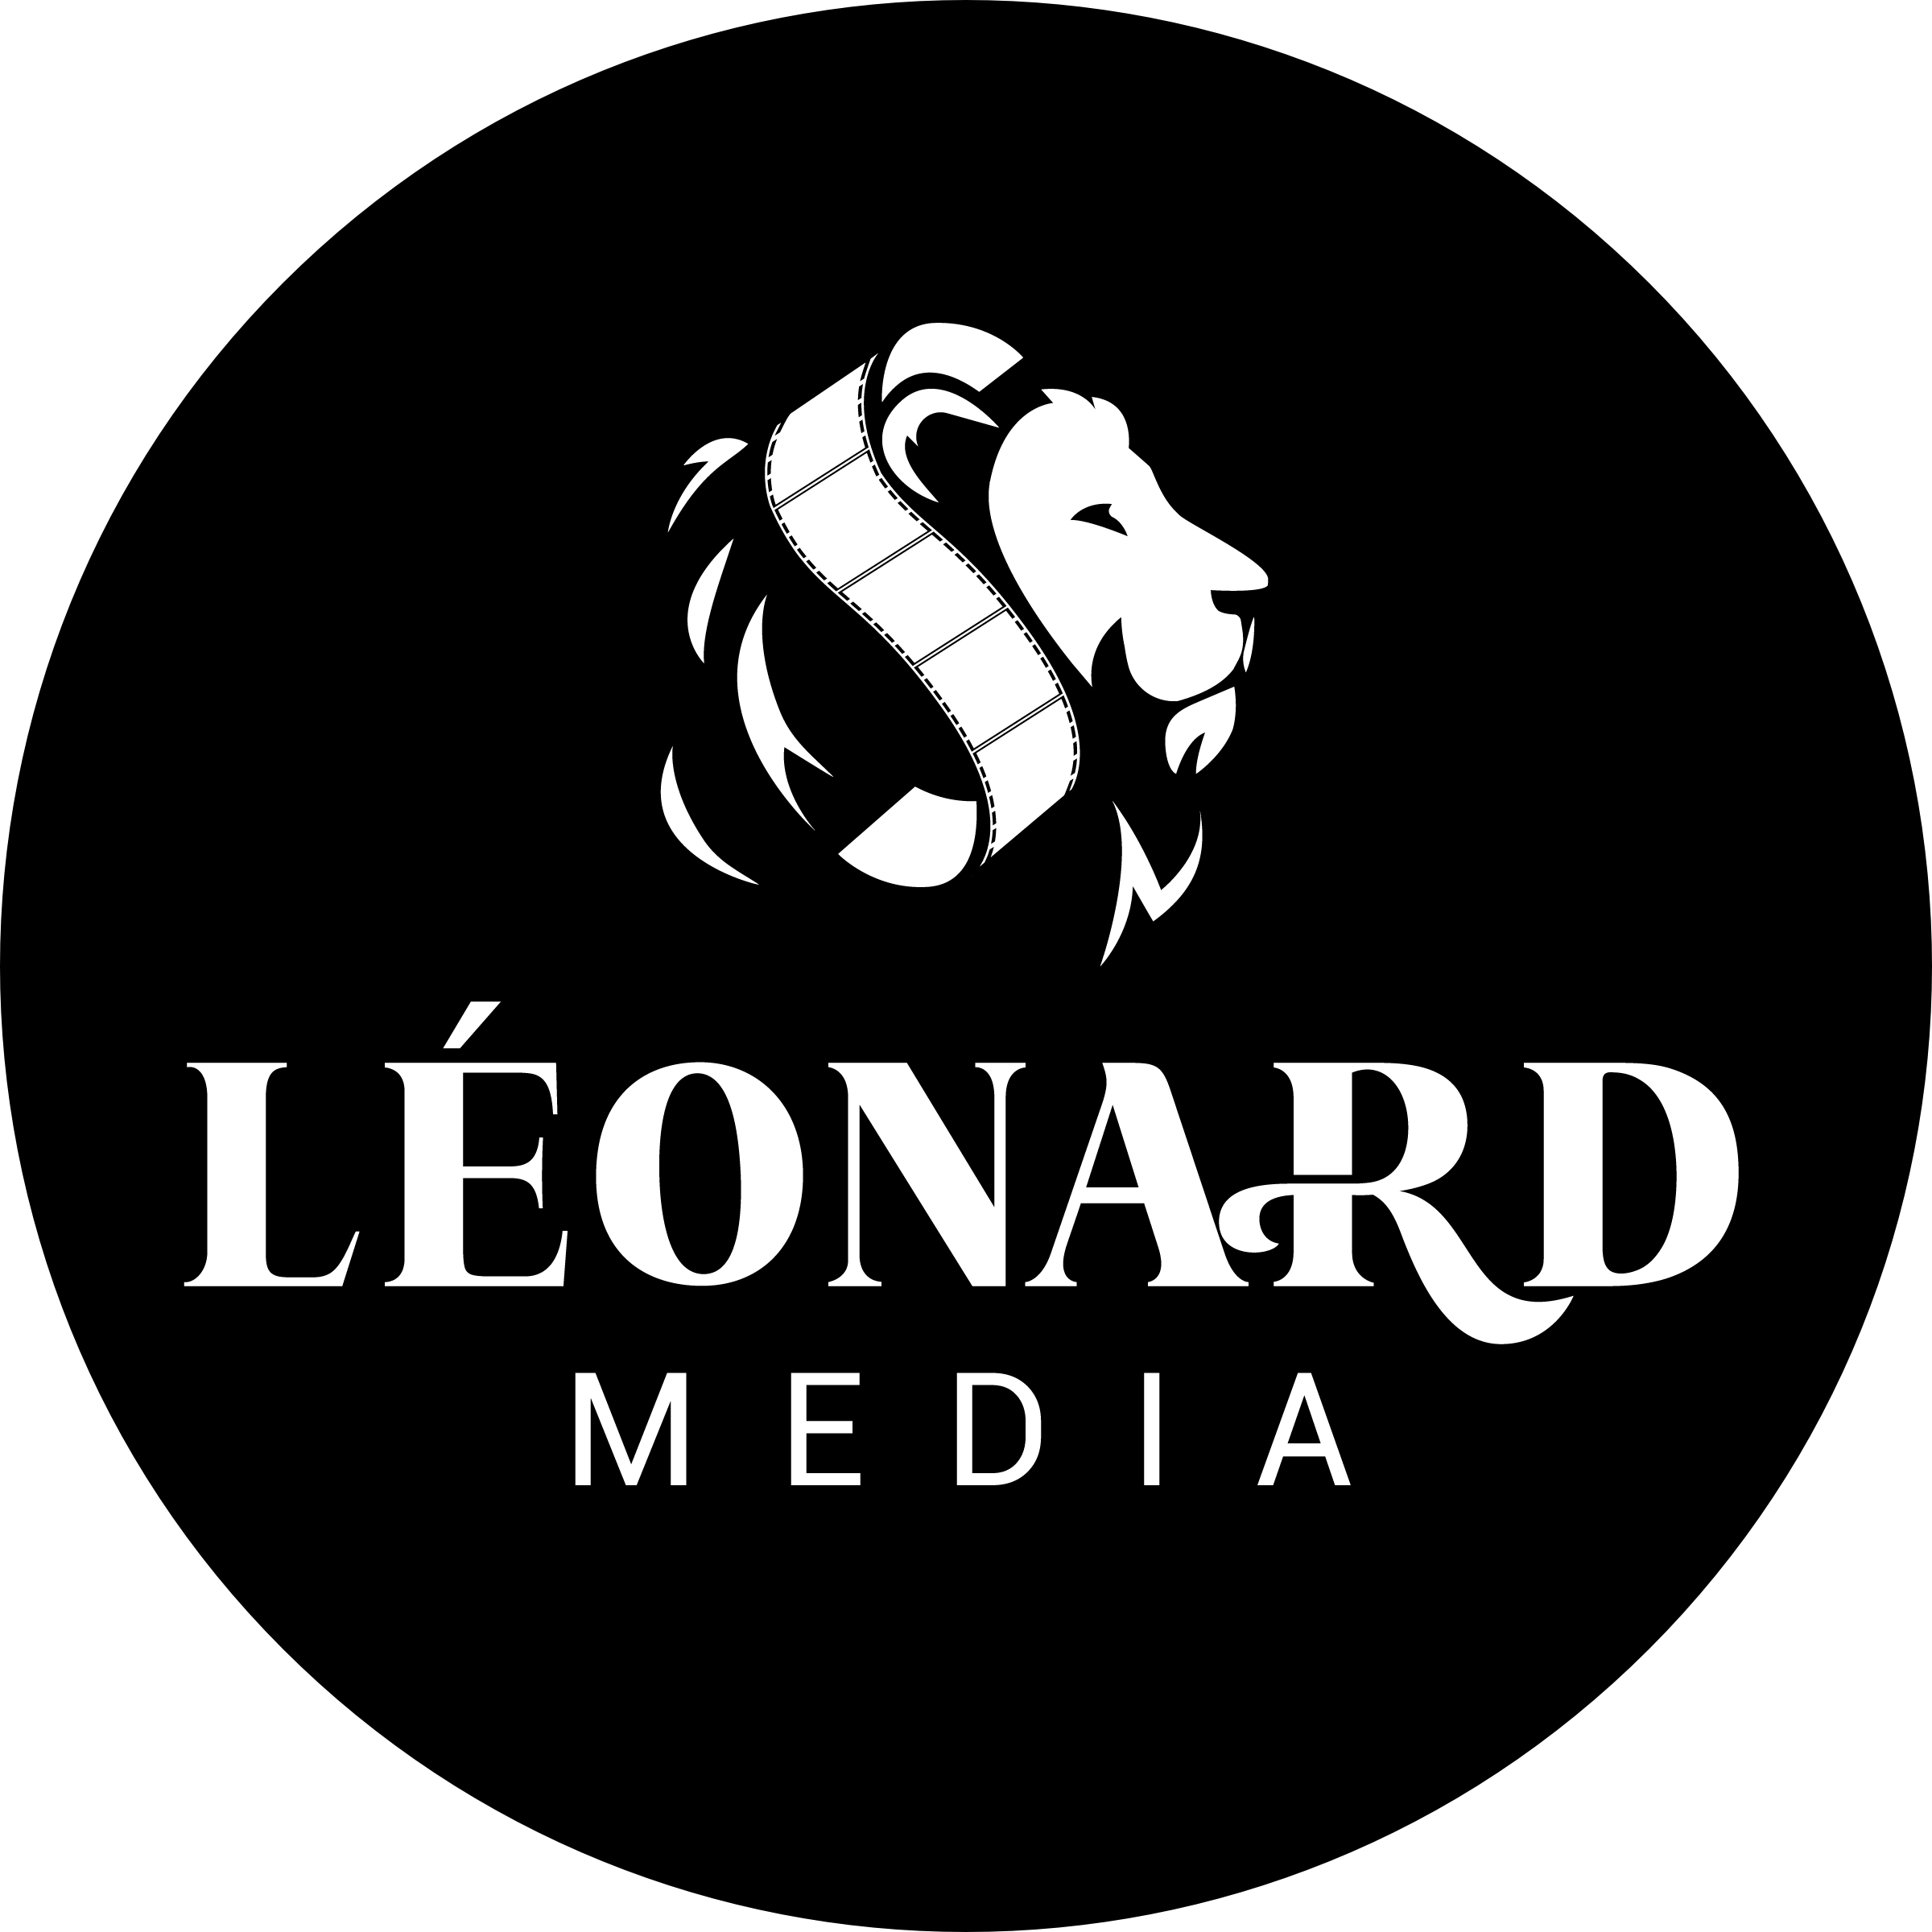 Léonard Media